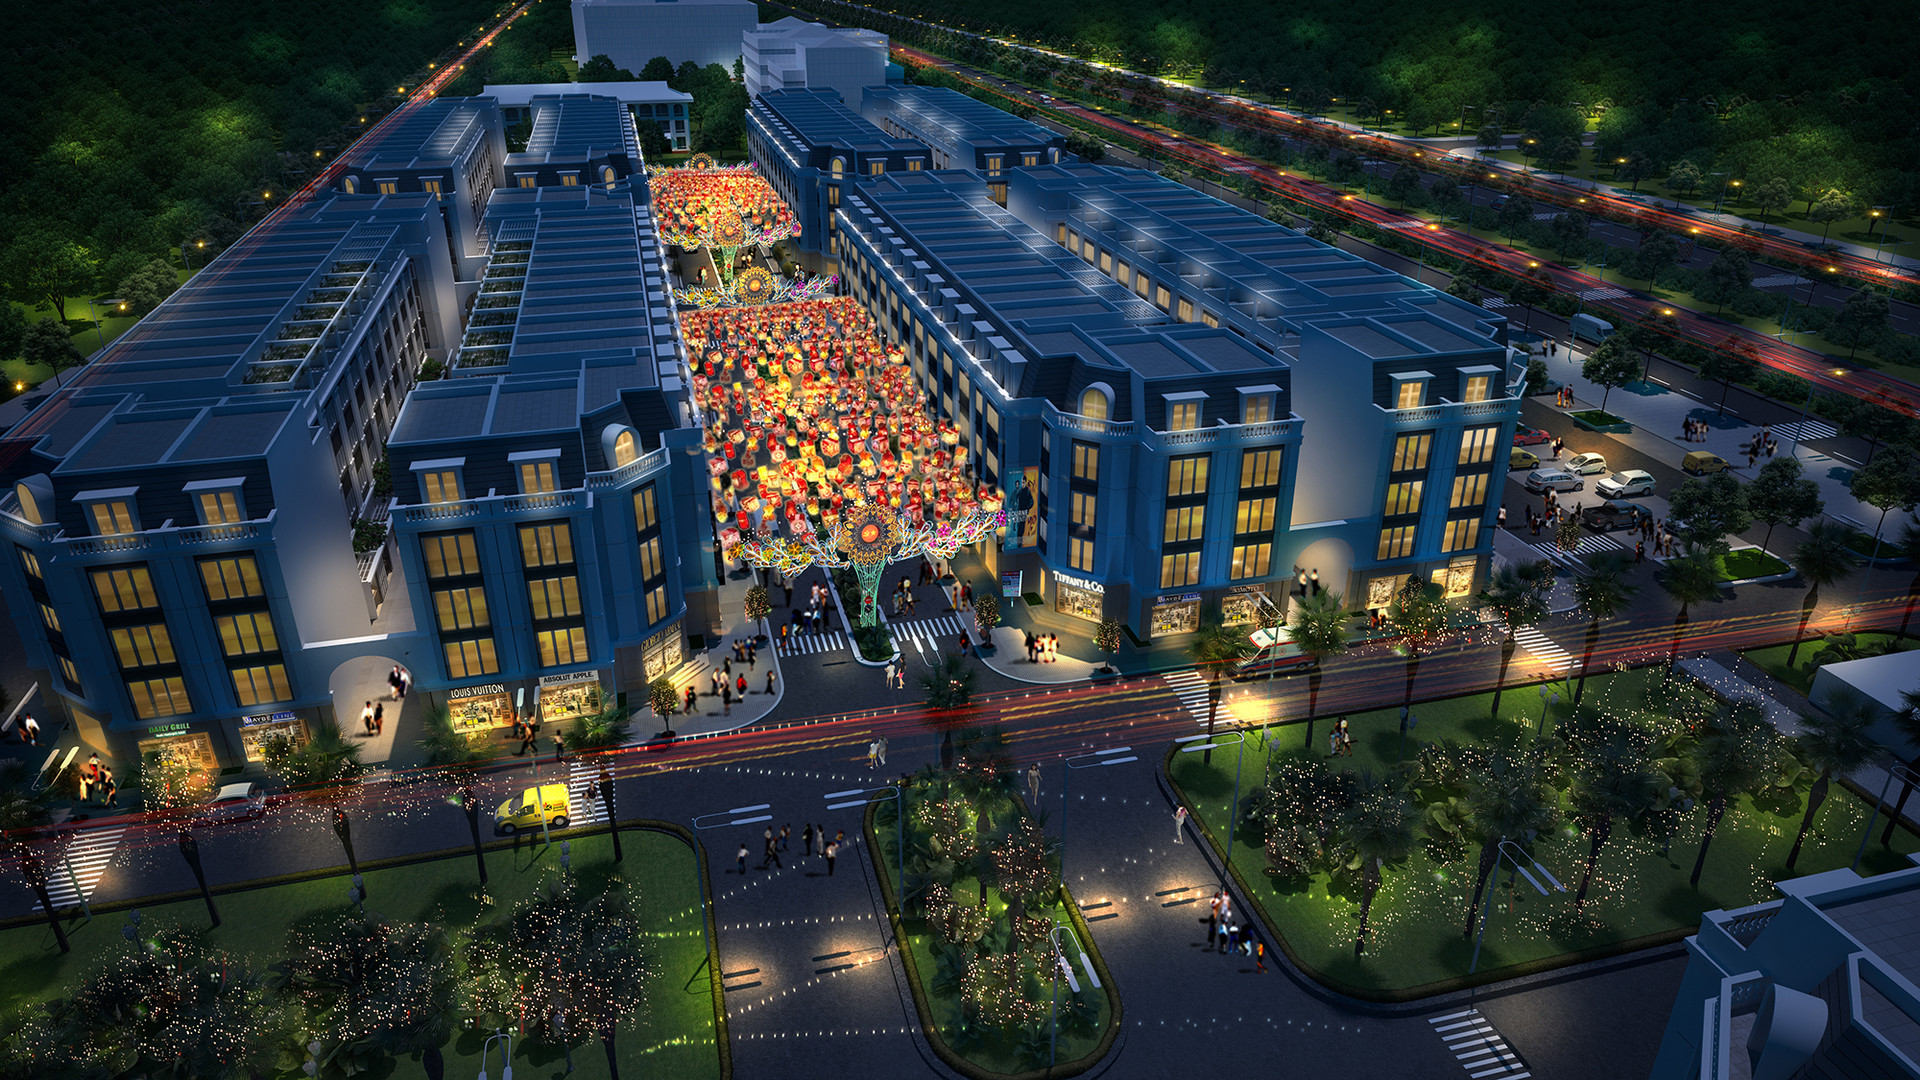 Khu phố đêm Hoa Châu mở ra diện mạo mới cho thành phố Thanh Hóa